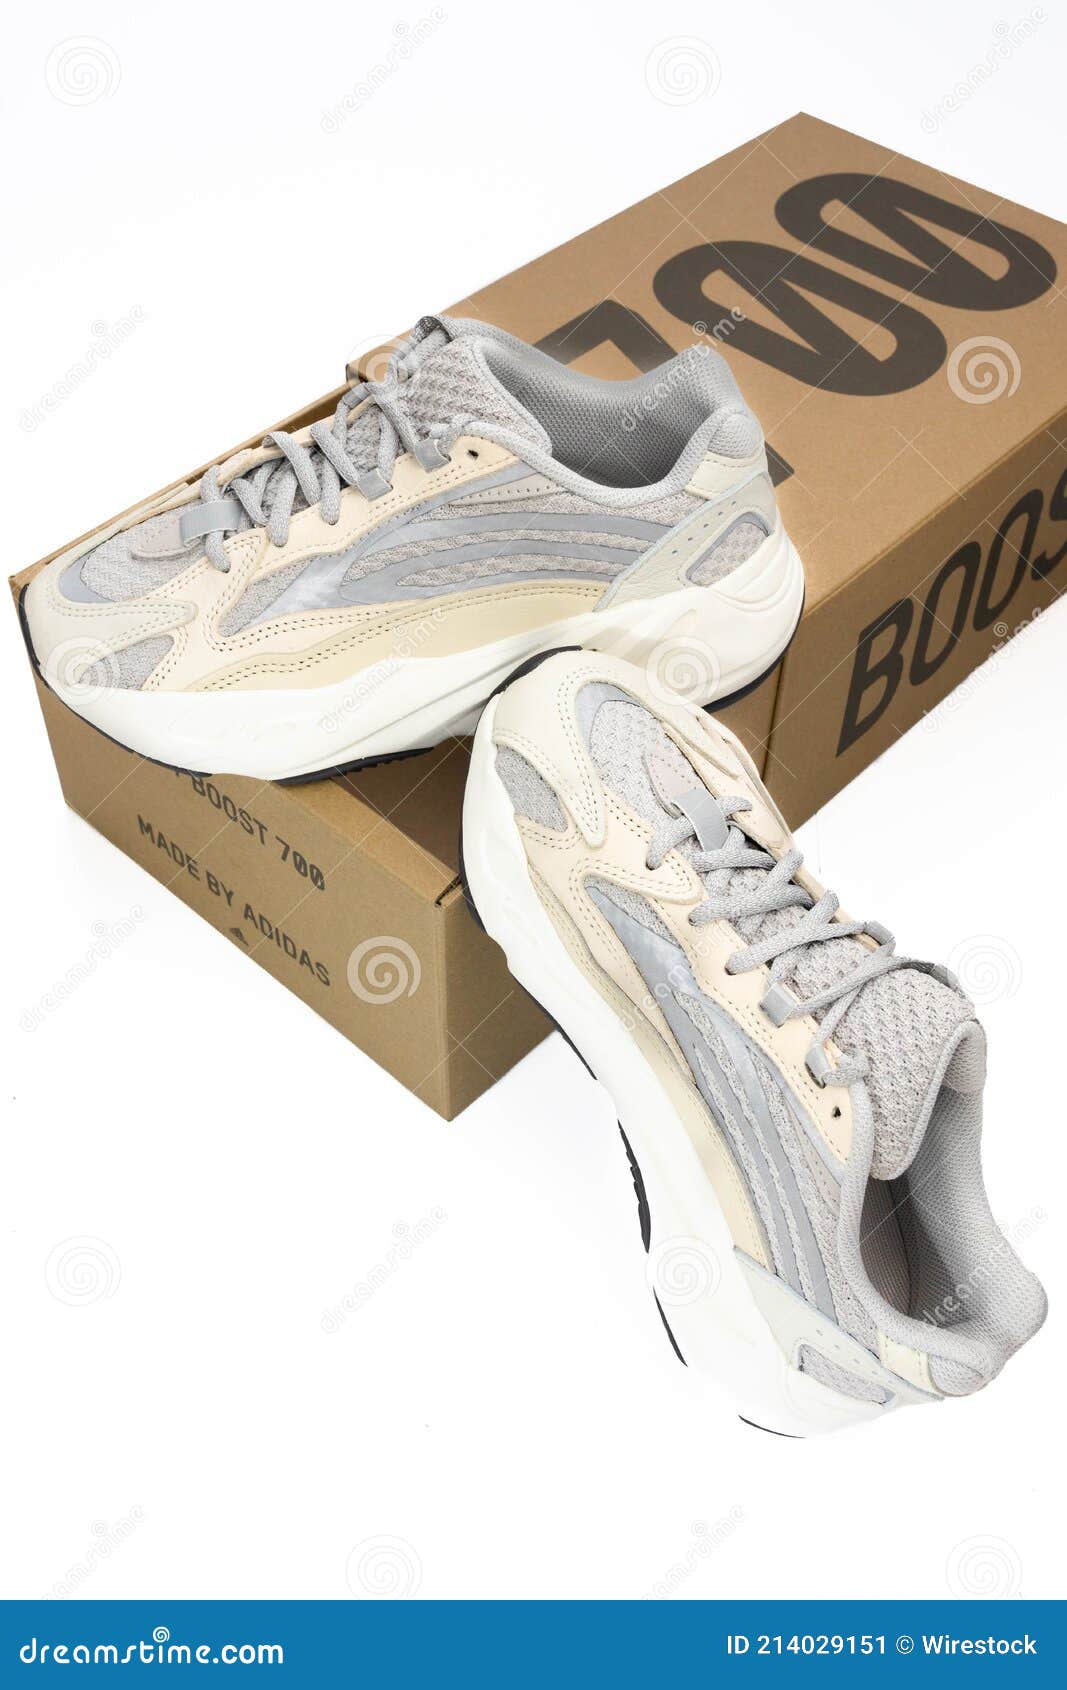 Adidas Yeezy Boost 700 V2 Crema. Zapatillas De Colección Limitada Con Caja. Fondo Blanco. editorial - Imagen de adidas, zapatos: 214029151